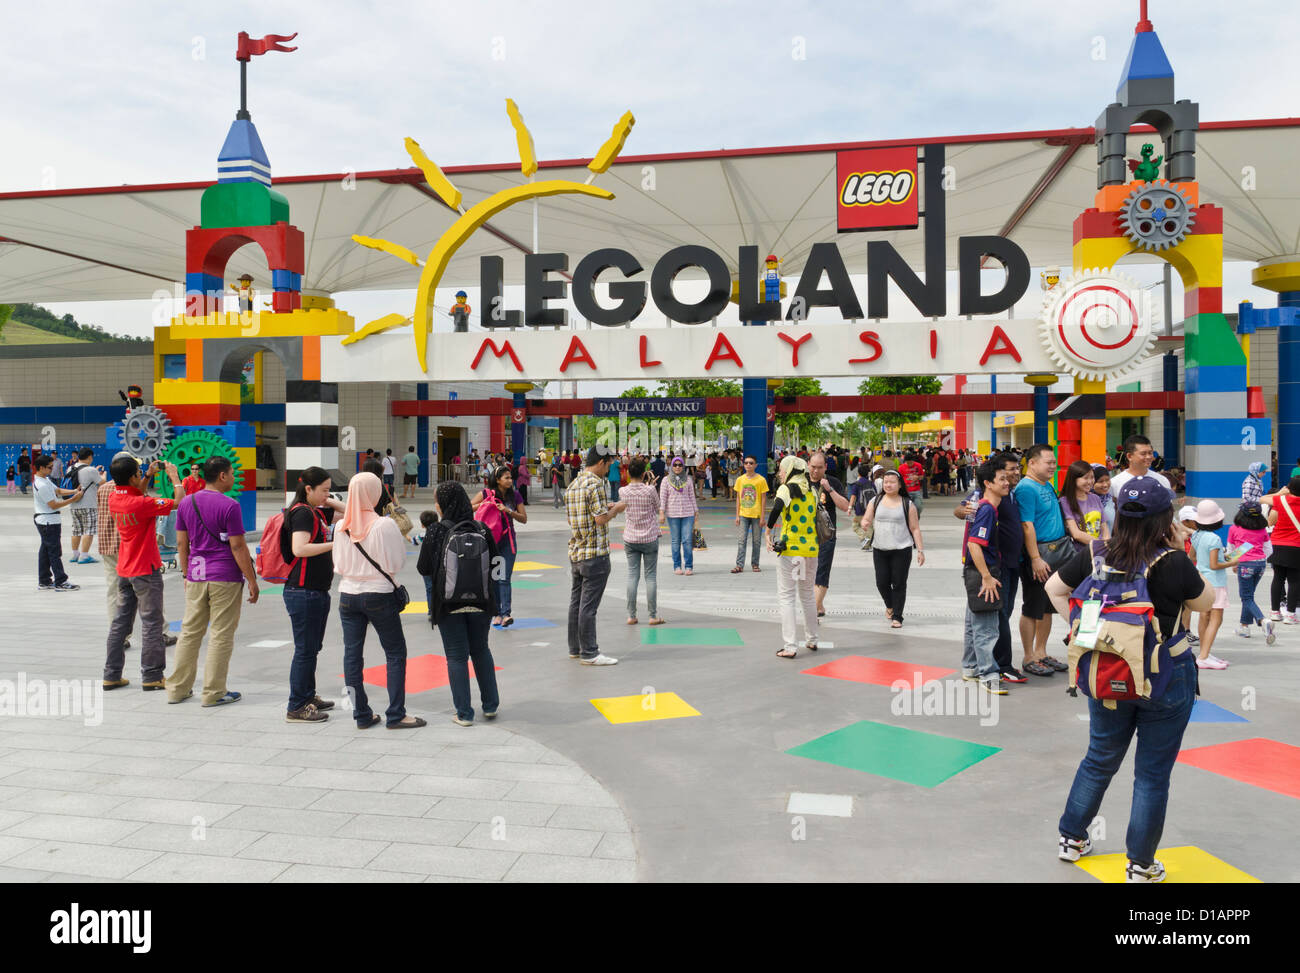 Les gens en face de l'Legoland Malaysia sign Banque D'Images